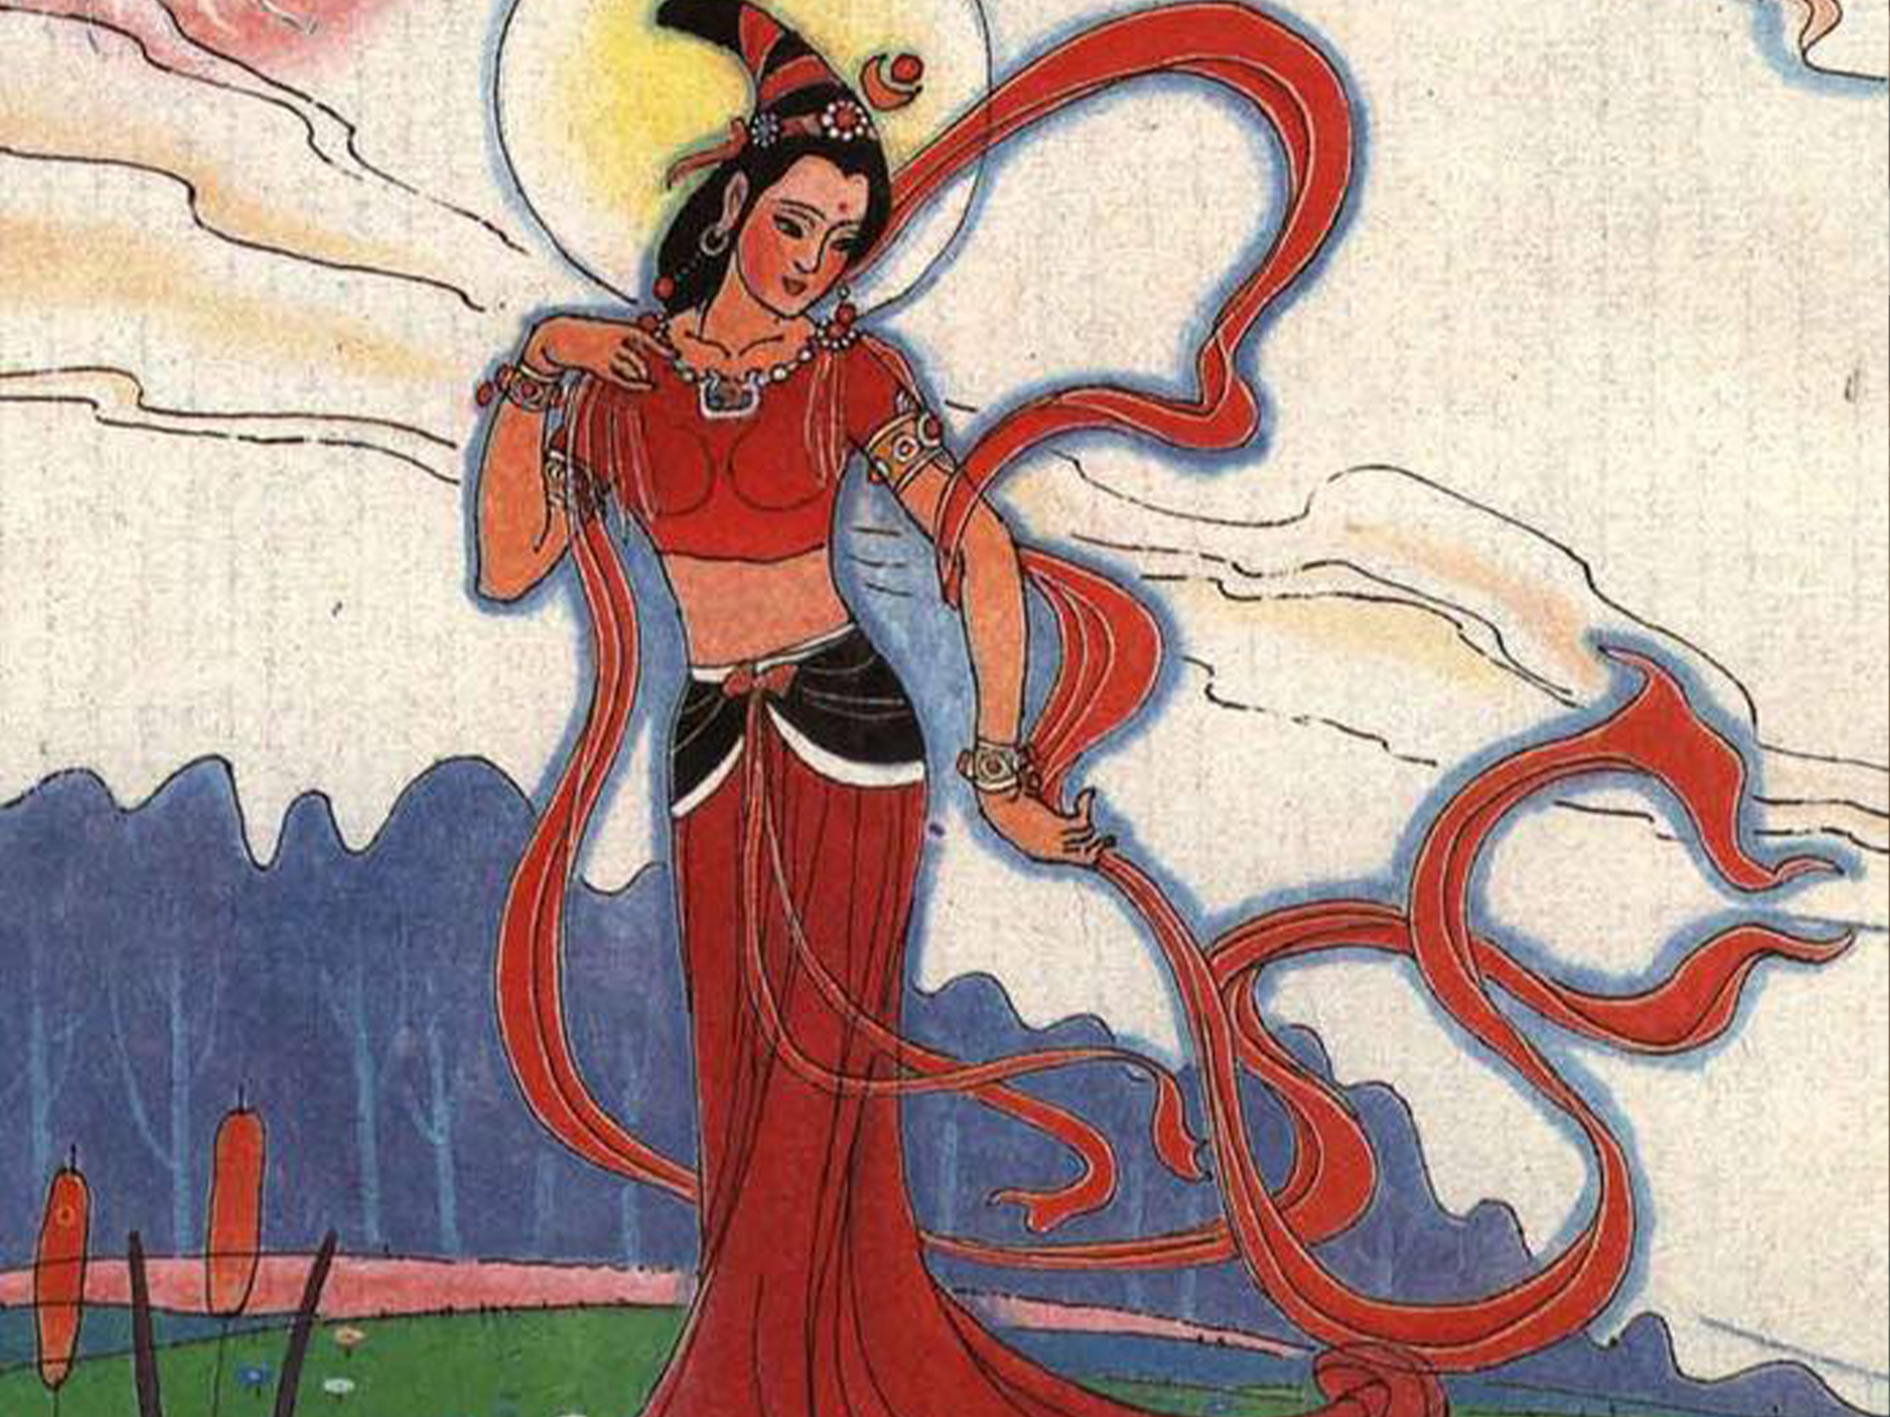 Китайская богиня Нюйва